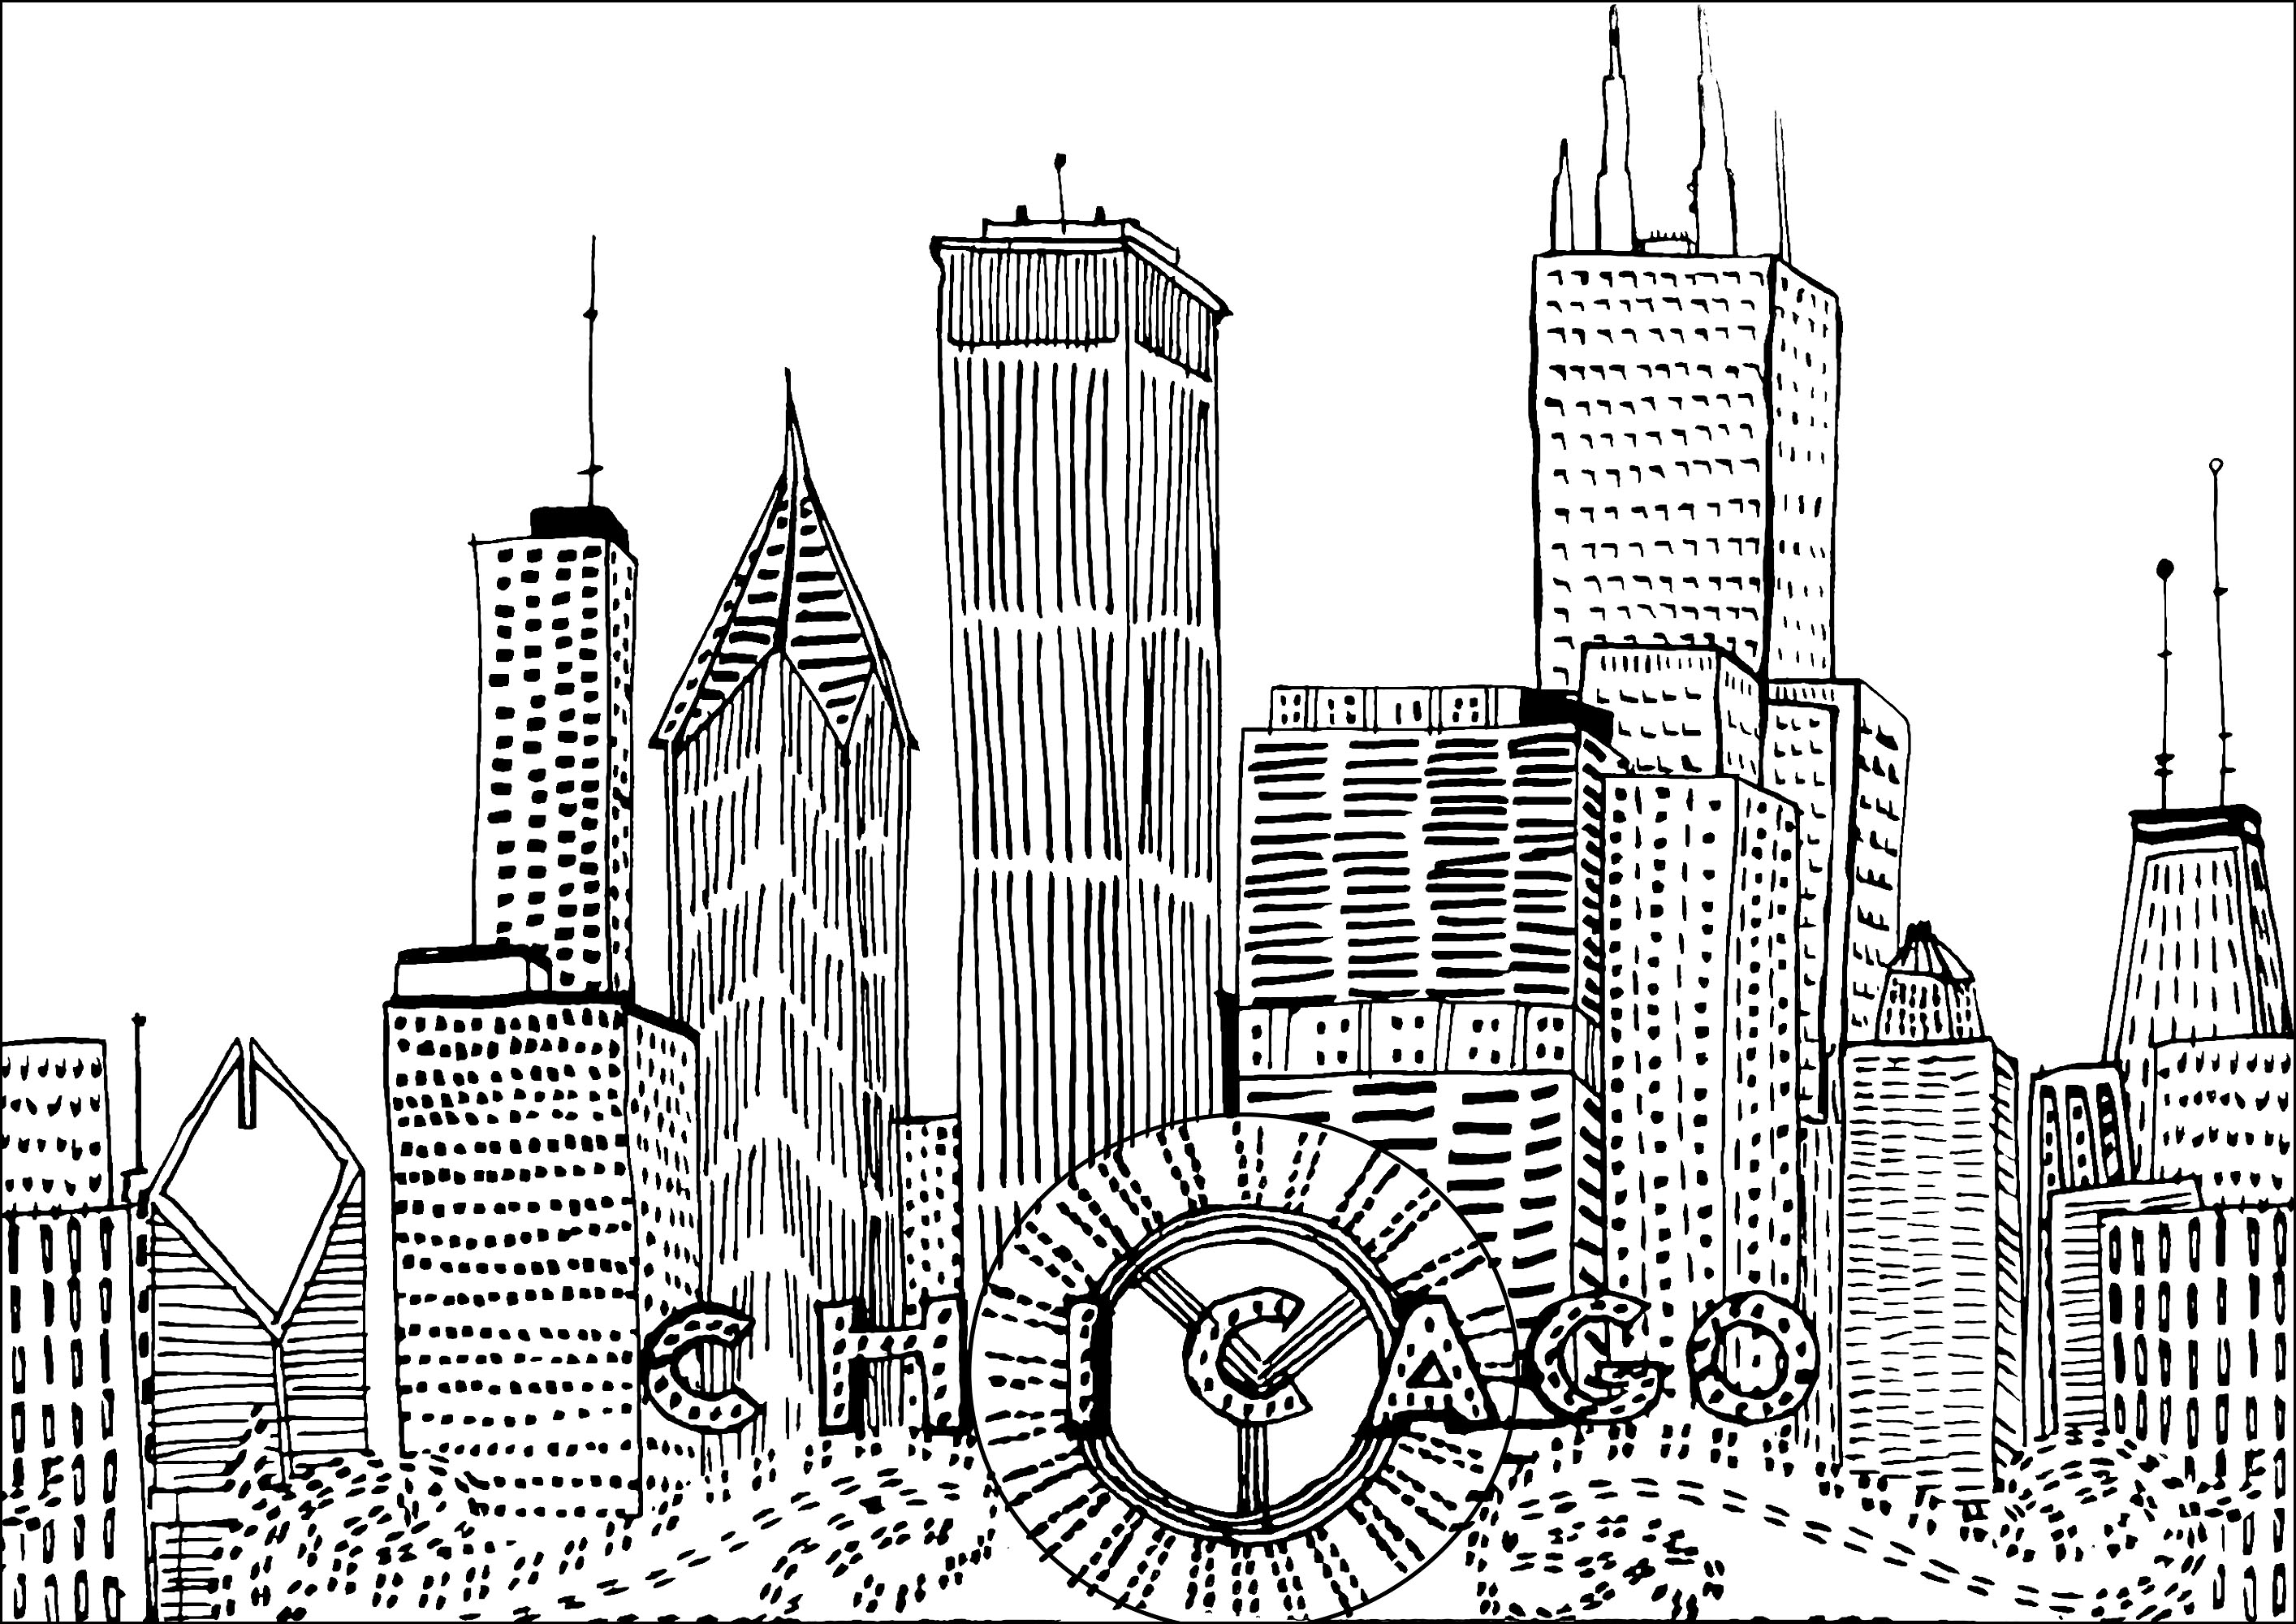 Handgezeichnete Chicagoer Wolkenkratzer. Diese Gebäude sind freihändig gezeichnet, daher sind die Konturen nicht unbedingt sehr gerade. Es ist ein sehr spezieller Stil, also liegt es an dir, die richtigen Farben hinzuzufügen!